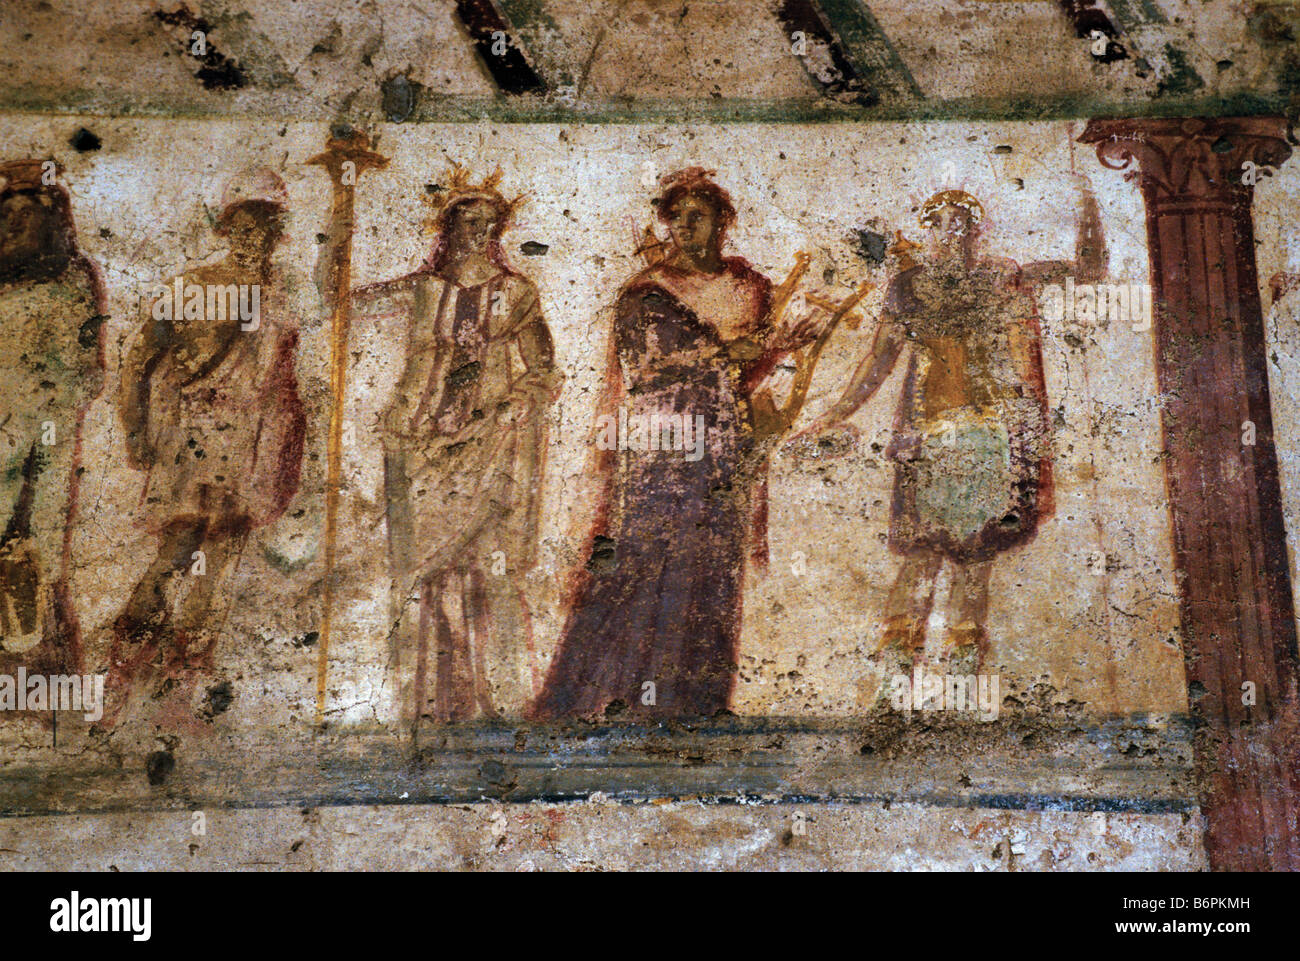 Via dell'abbondanza fresques de Pompéi en Italie Banque D'Images